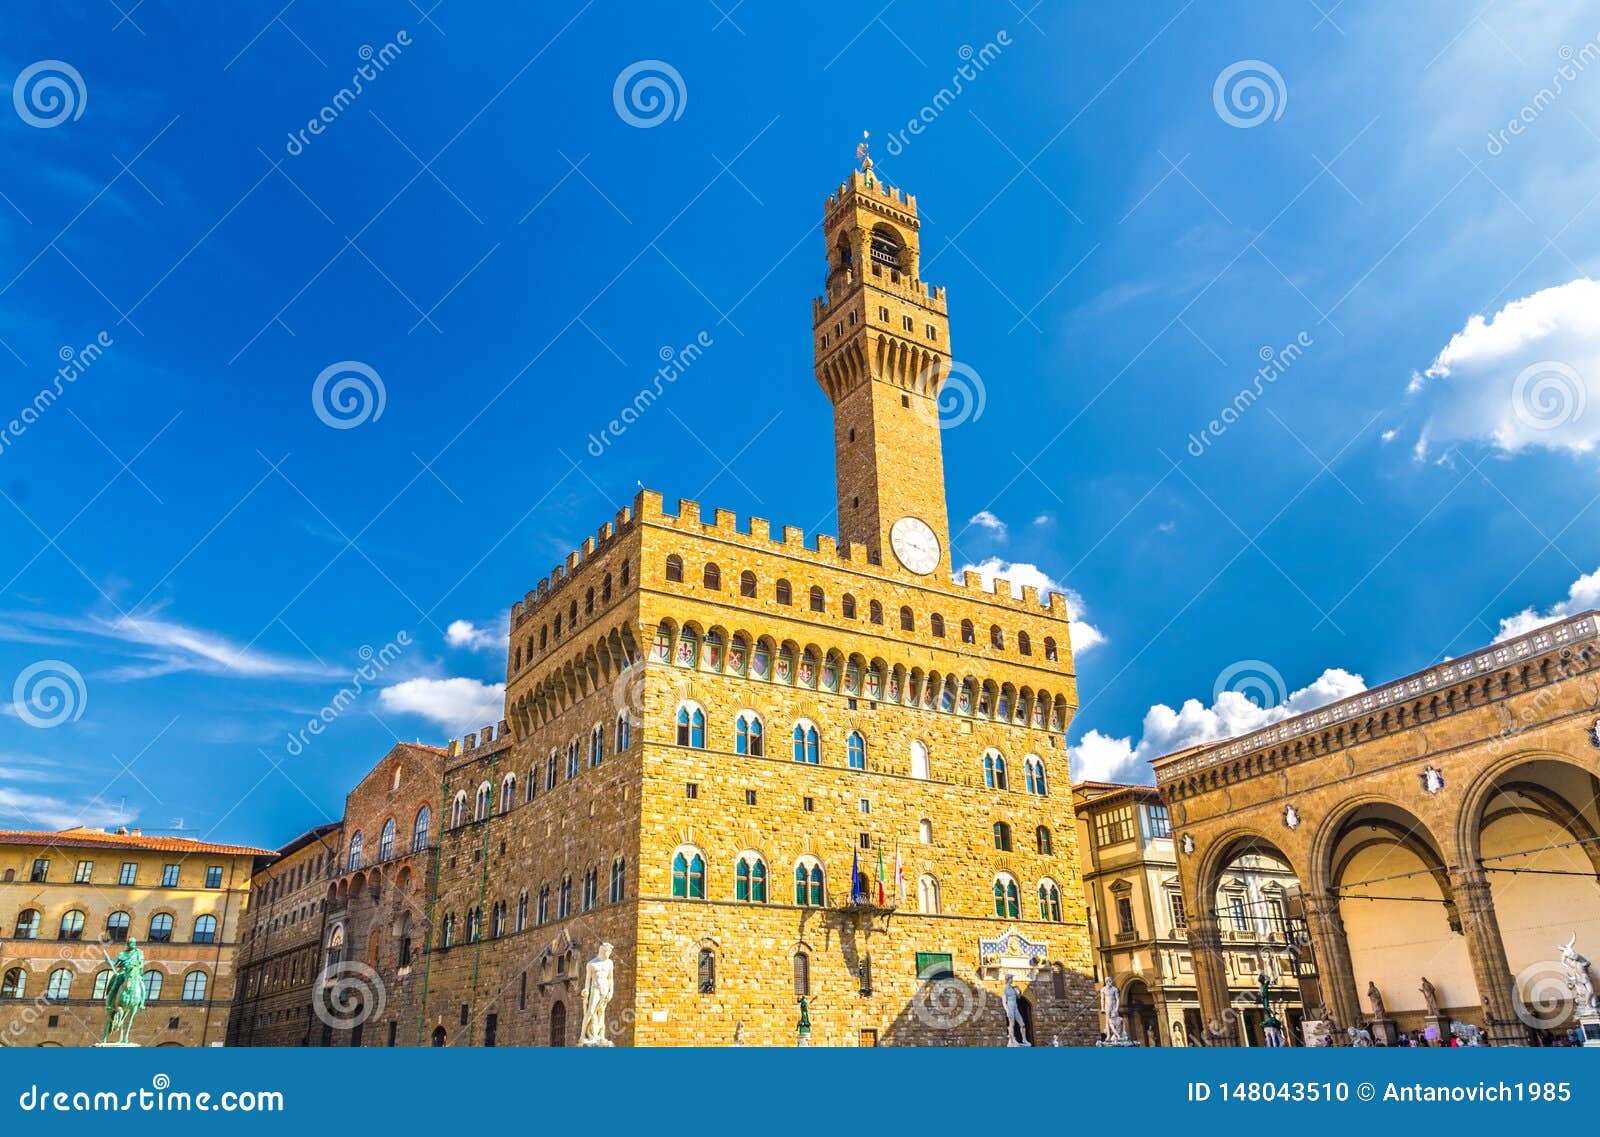 palazzo vecchio palace with bell tower with clock and loggia dei lanzi on piazza della signoria square in historical centre of flo